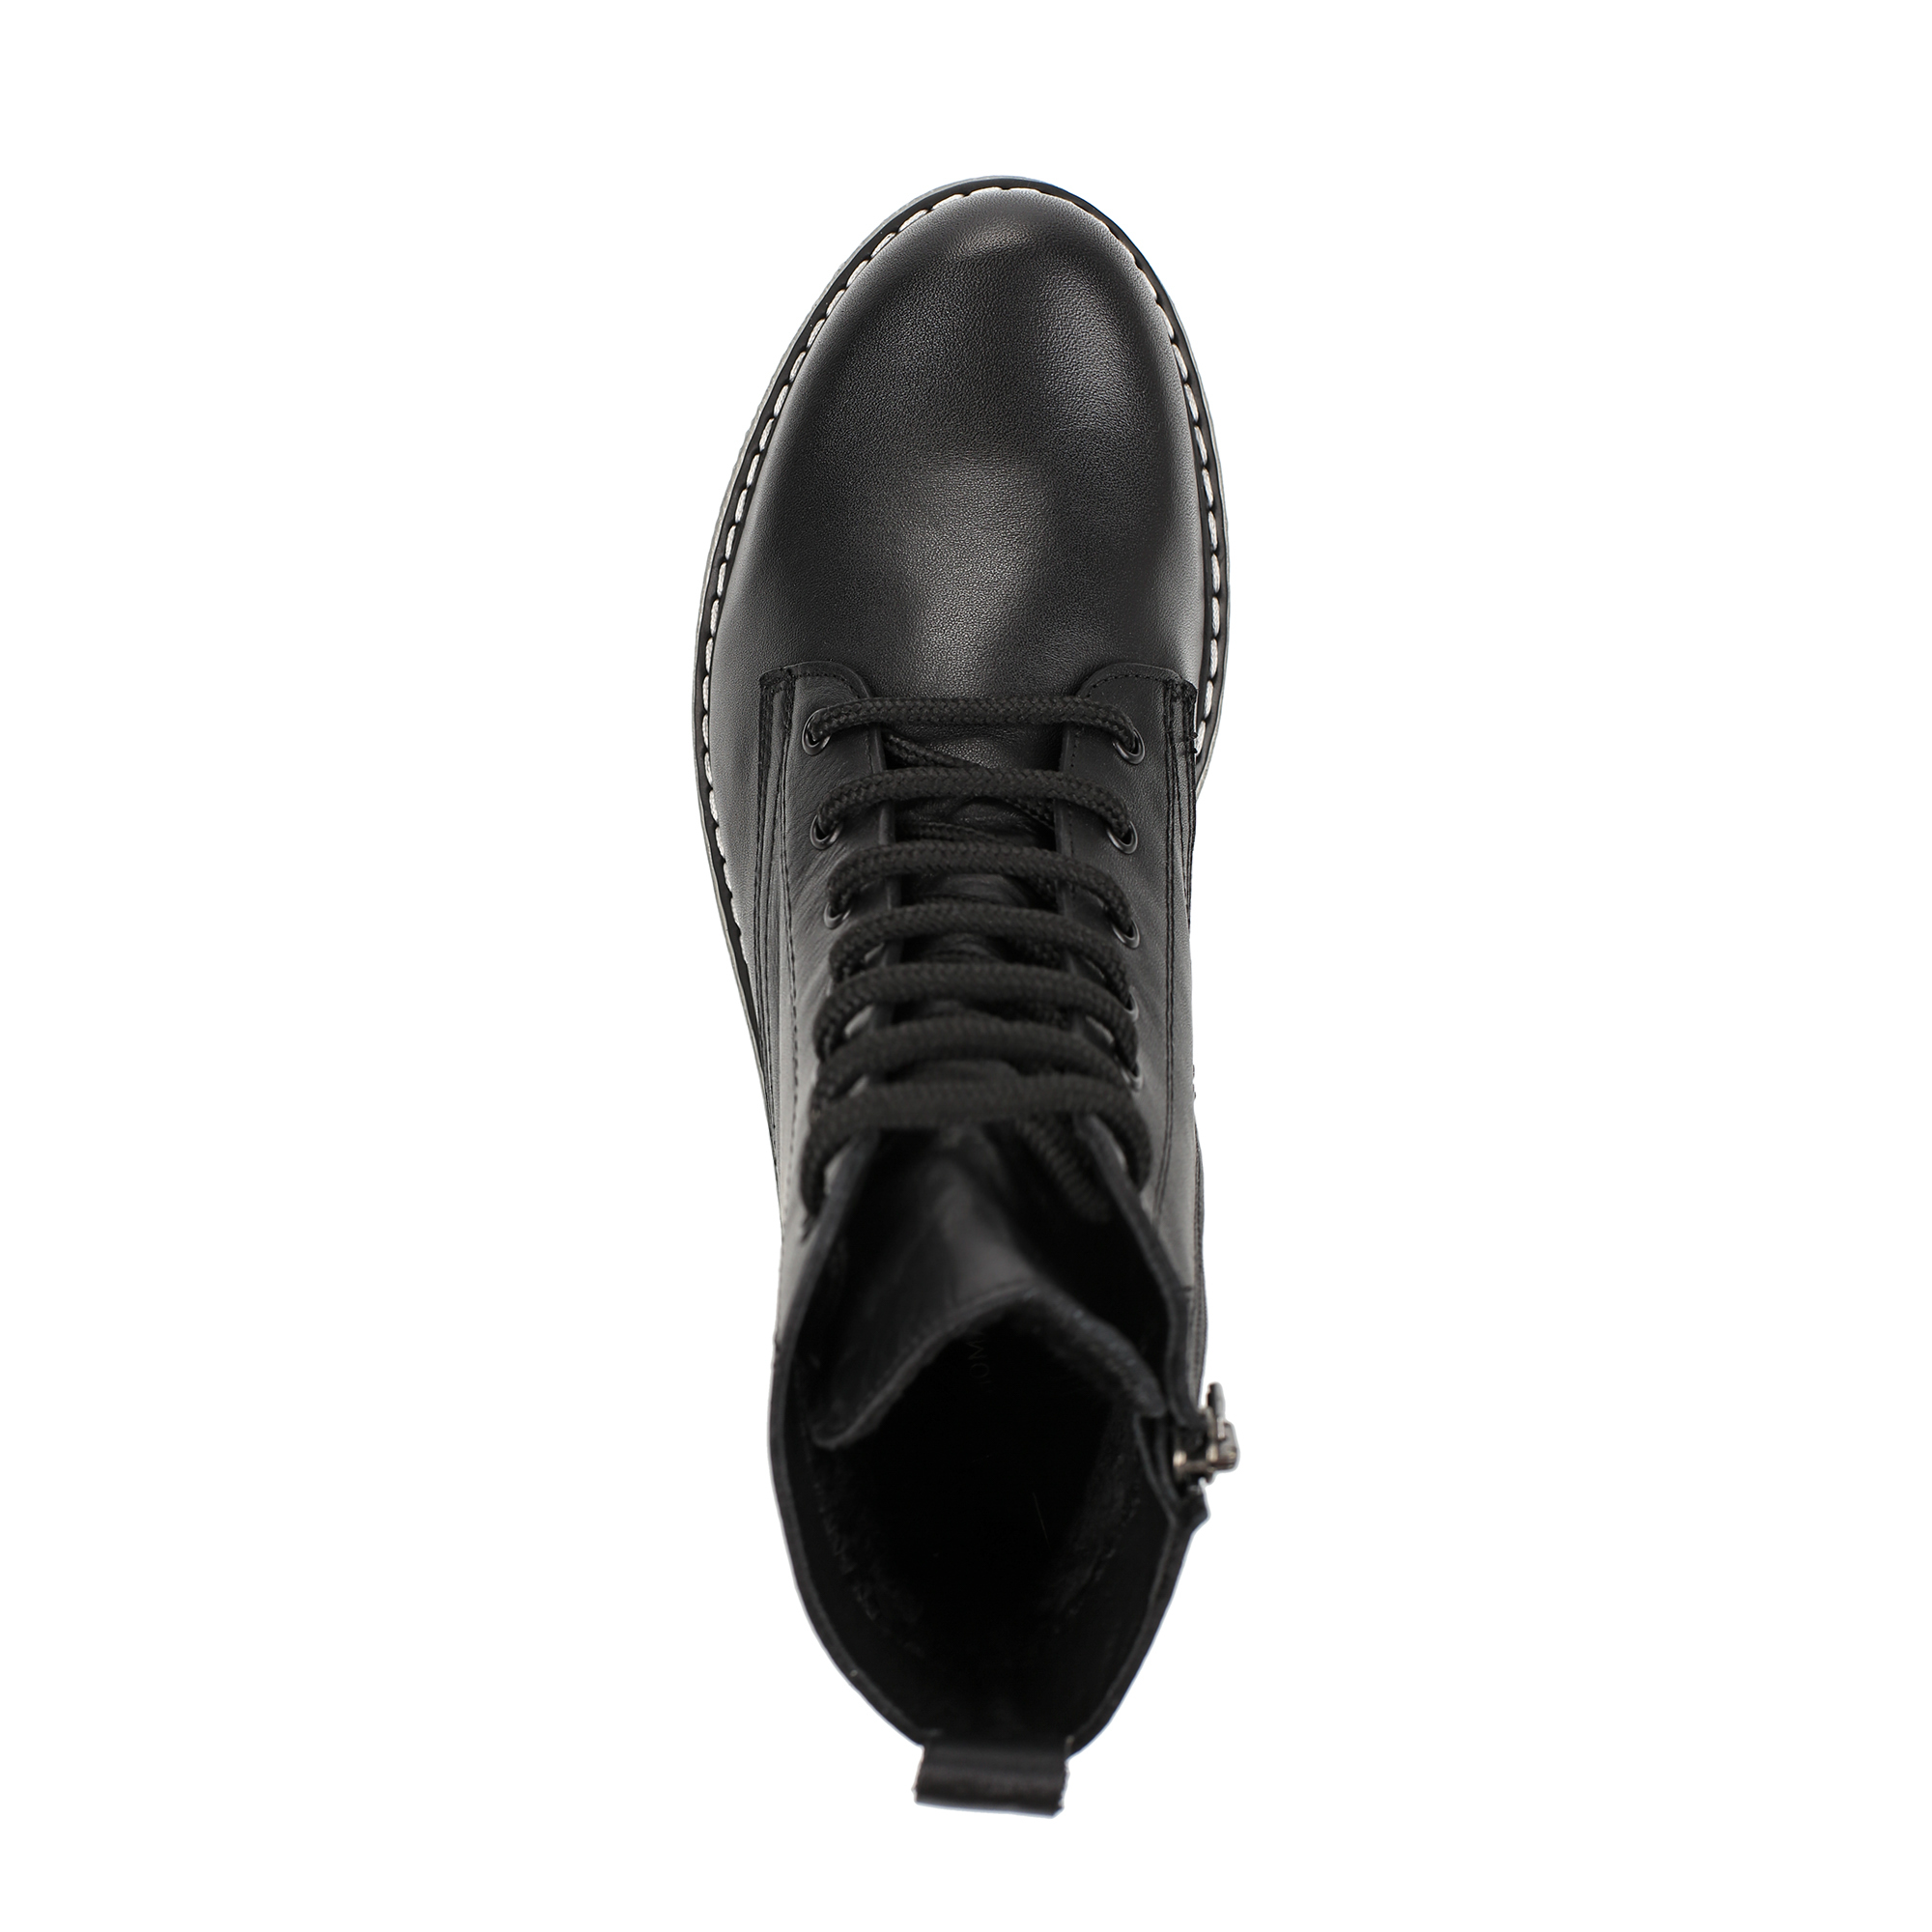 Ботинки Thomas Munz 506-005A-2102, цвет черный, размер 39 - фото 5